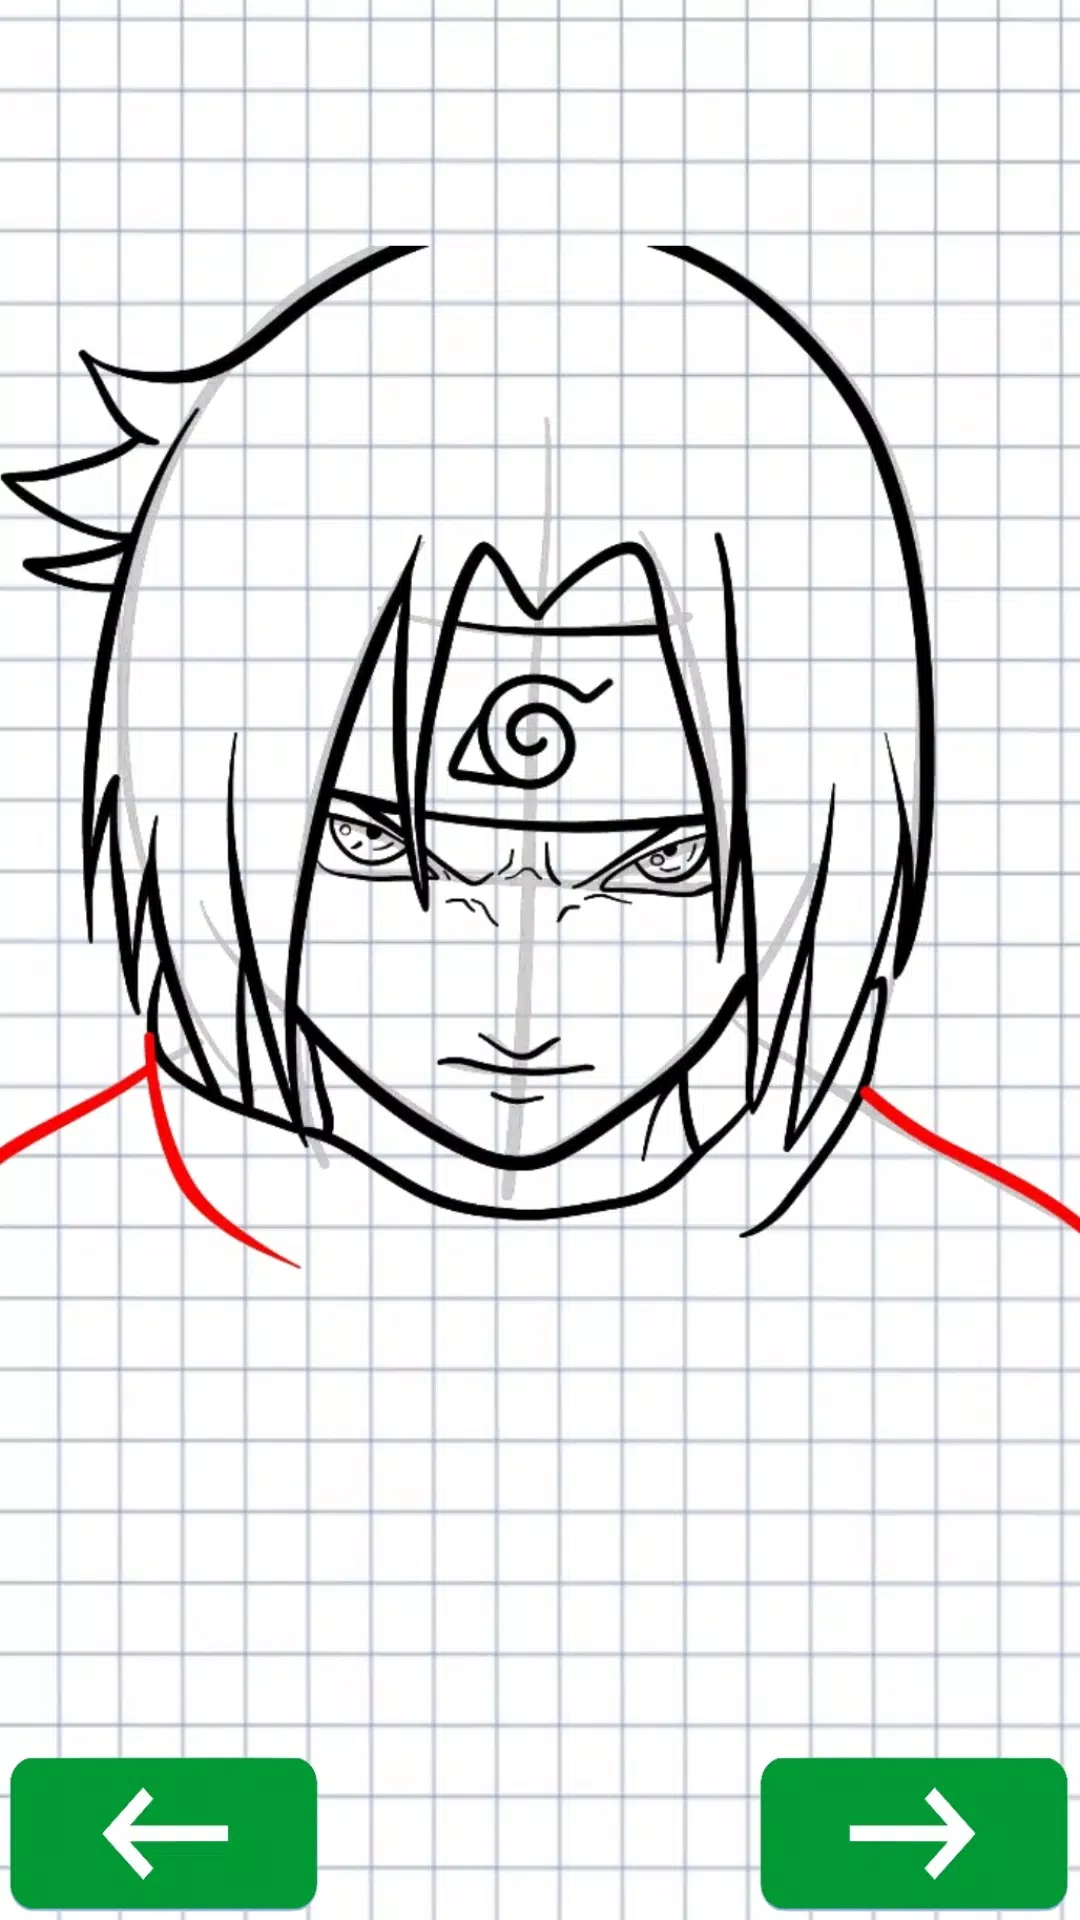 Como desenhar Uchiha Sasuke - Guias de desenho fáceis passo a passo -  Howtos de desenho